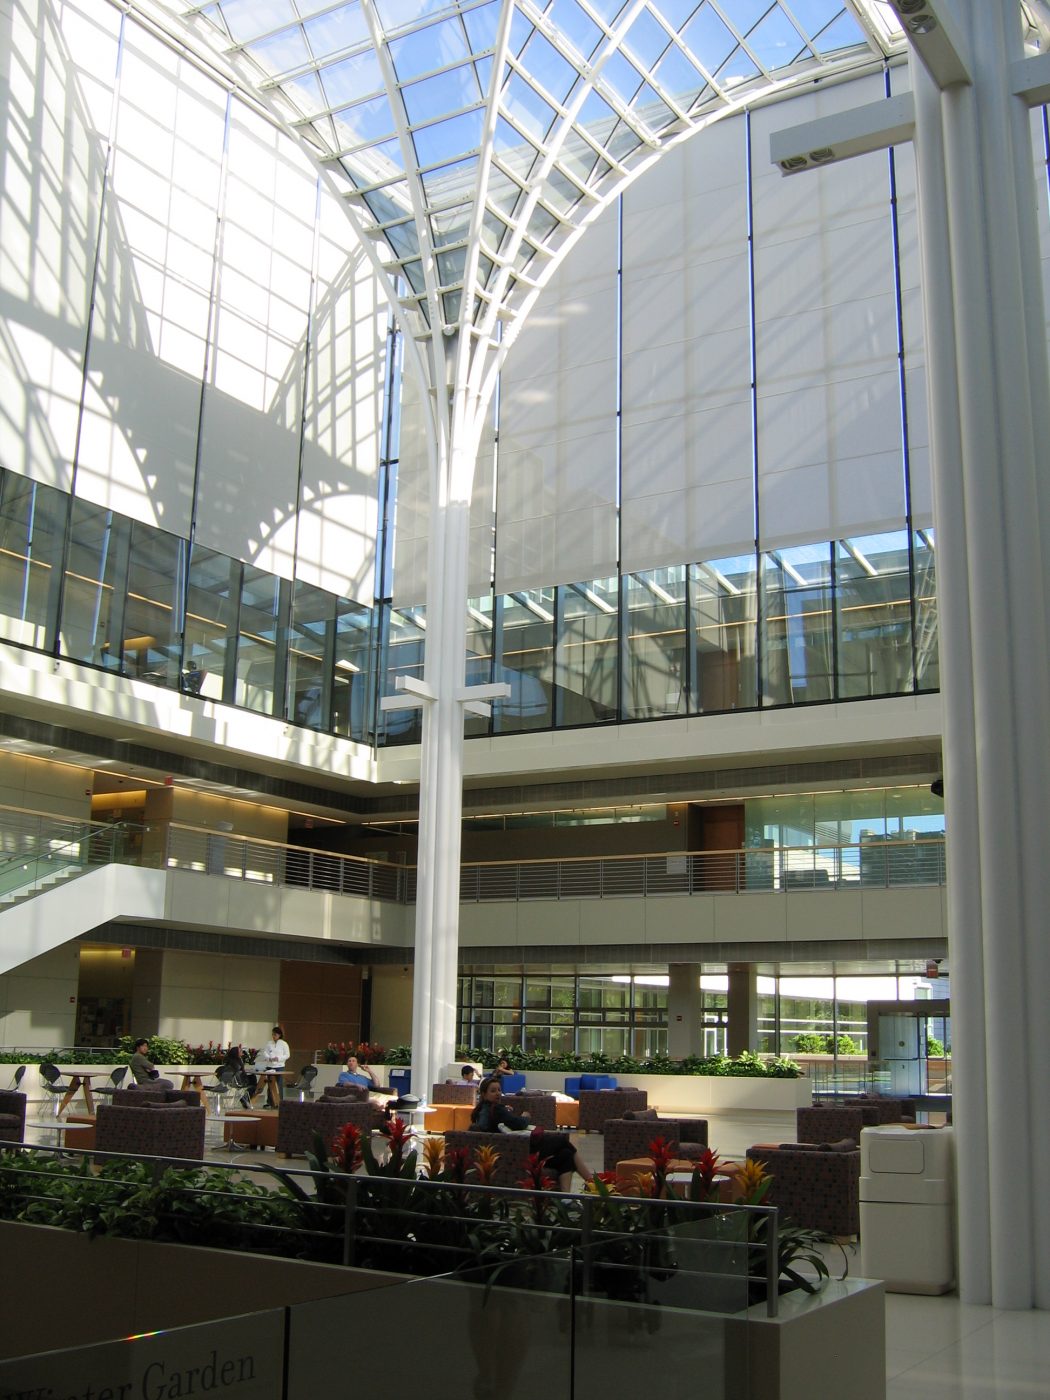 University of chicago business school atrium